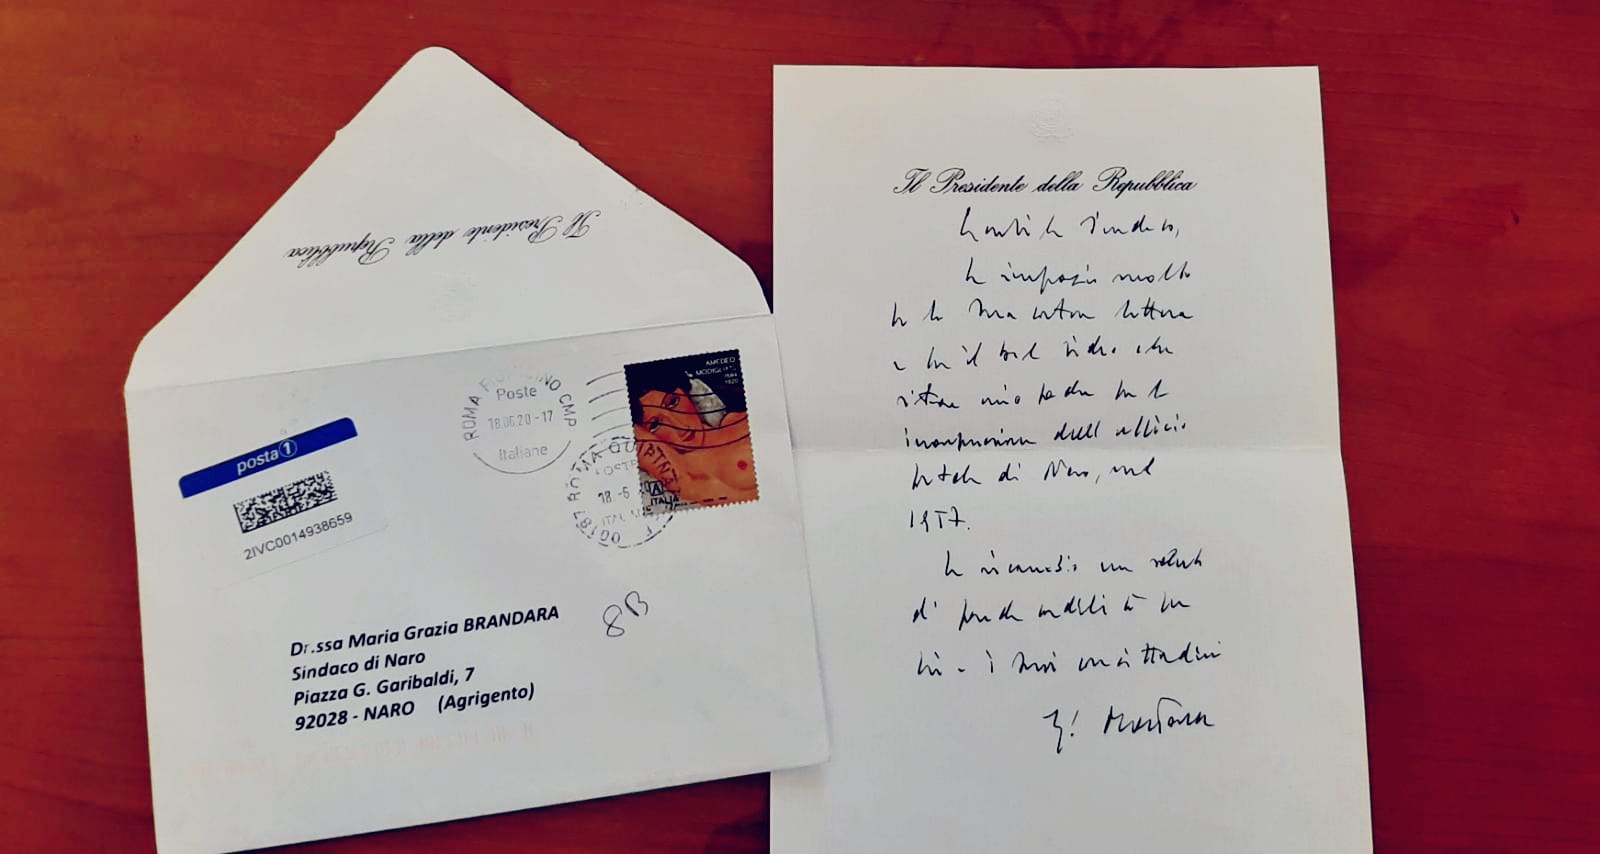 Il sindaco scrive, Mattarella risponde: “Lettera interamente di suo pugno, ci riempie di orgoglio”